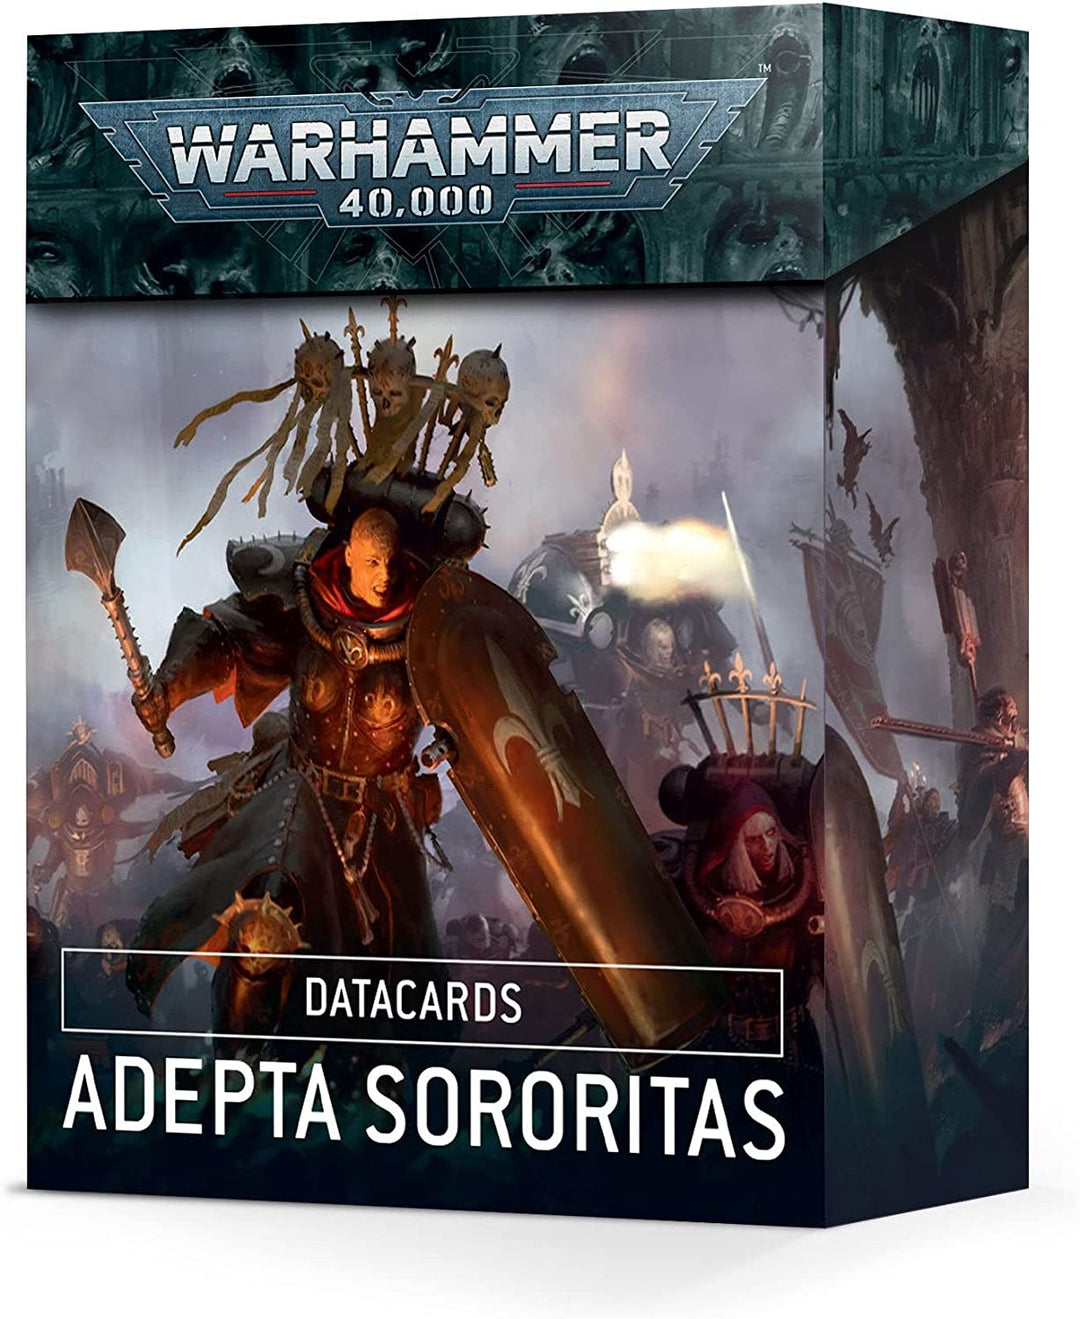 Warhammer 40k: Adepta Sororitas Datacards